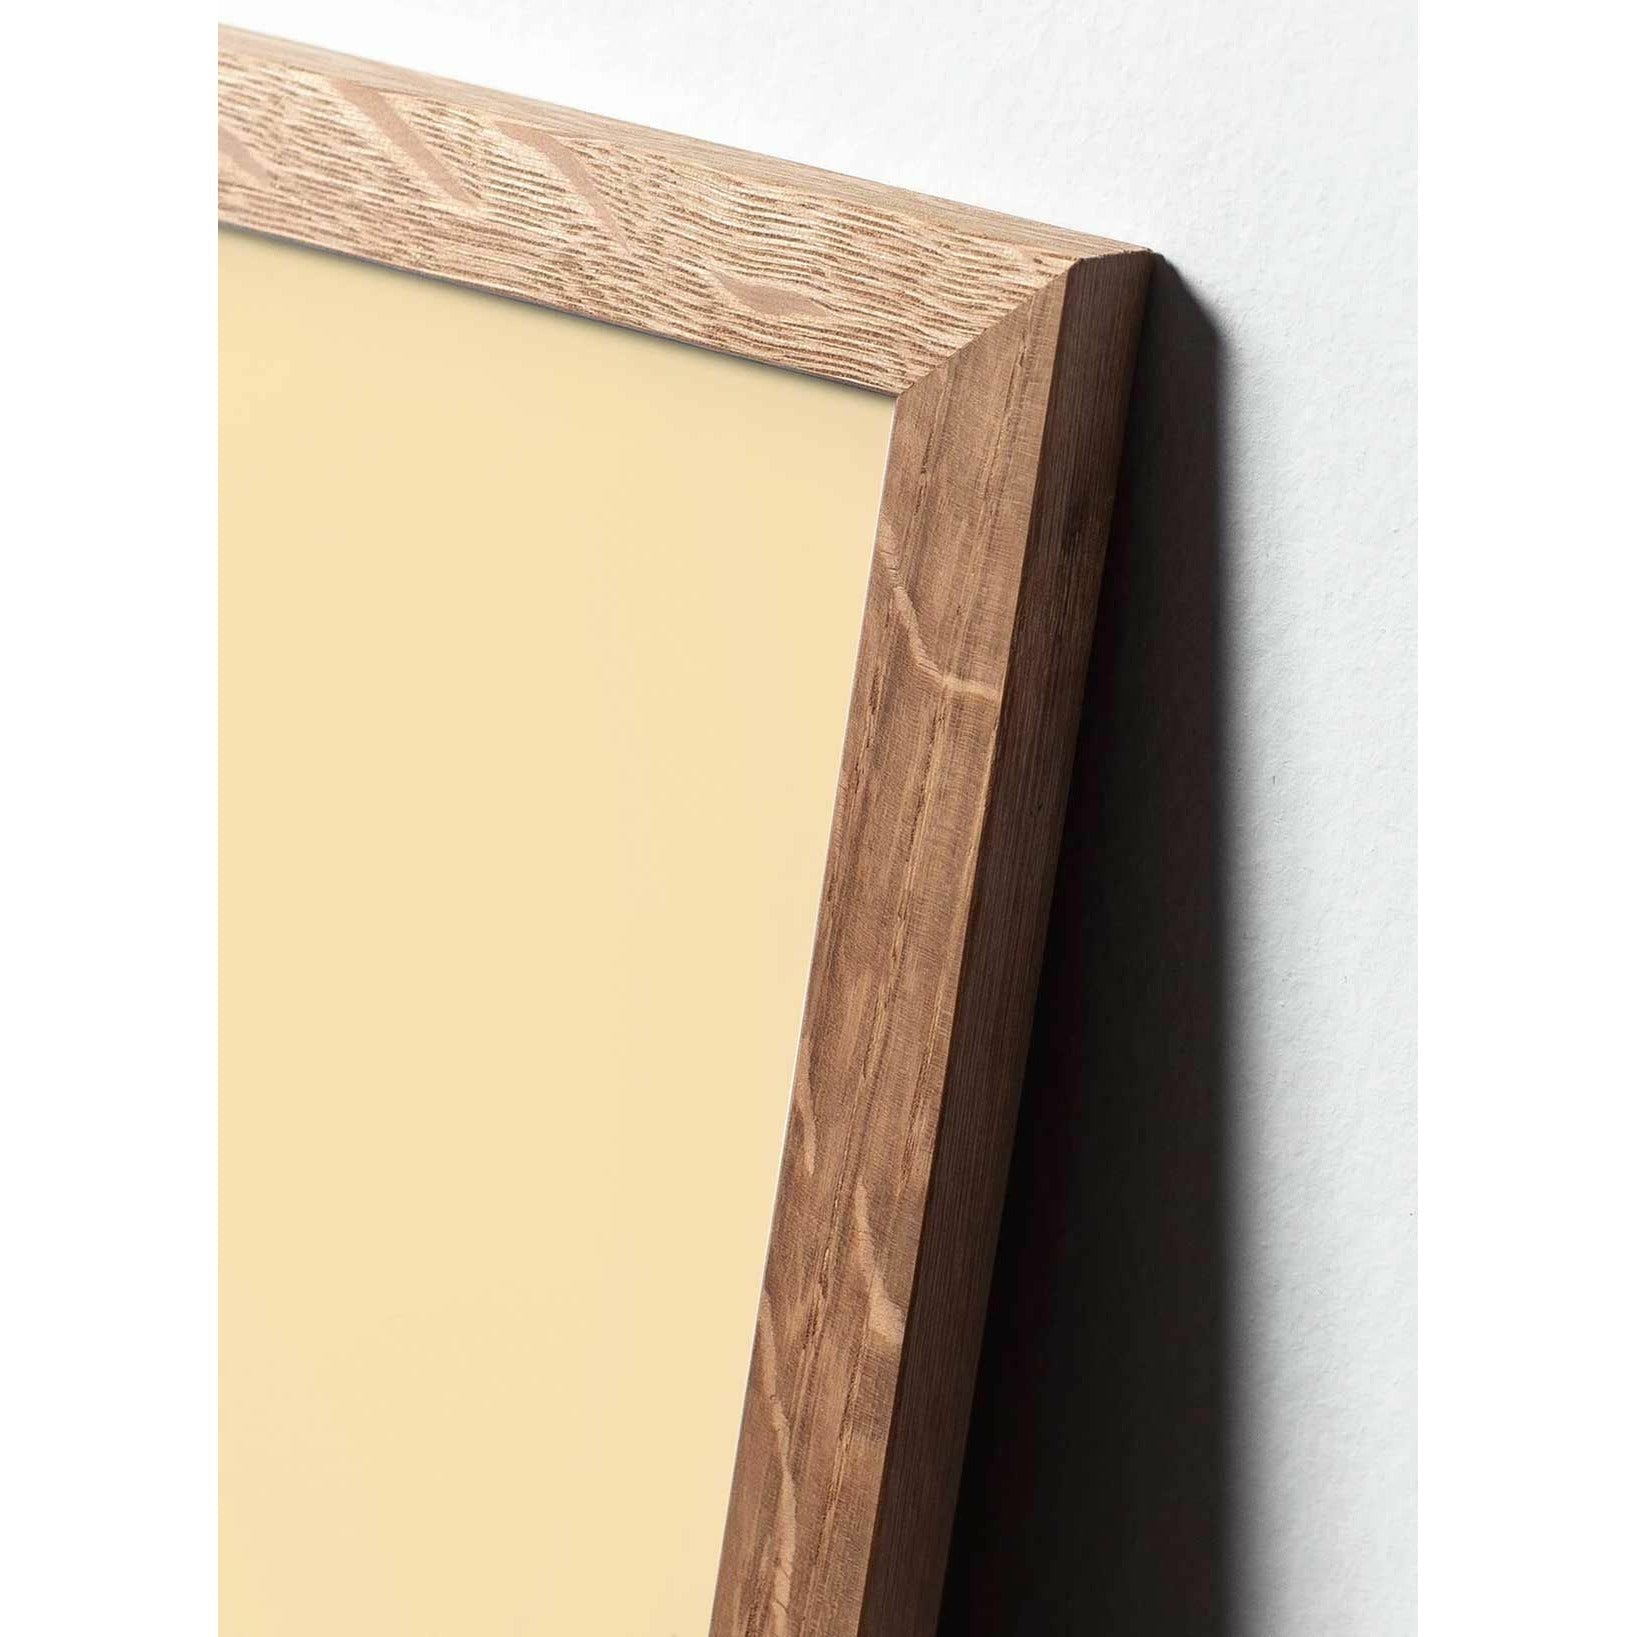 Brainchild Ant Design Icon -juliste, kehys, joka on valmistettu kevyestä puusta A5, keltainen